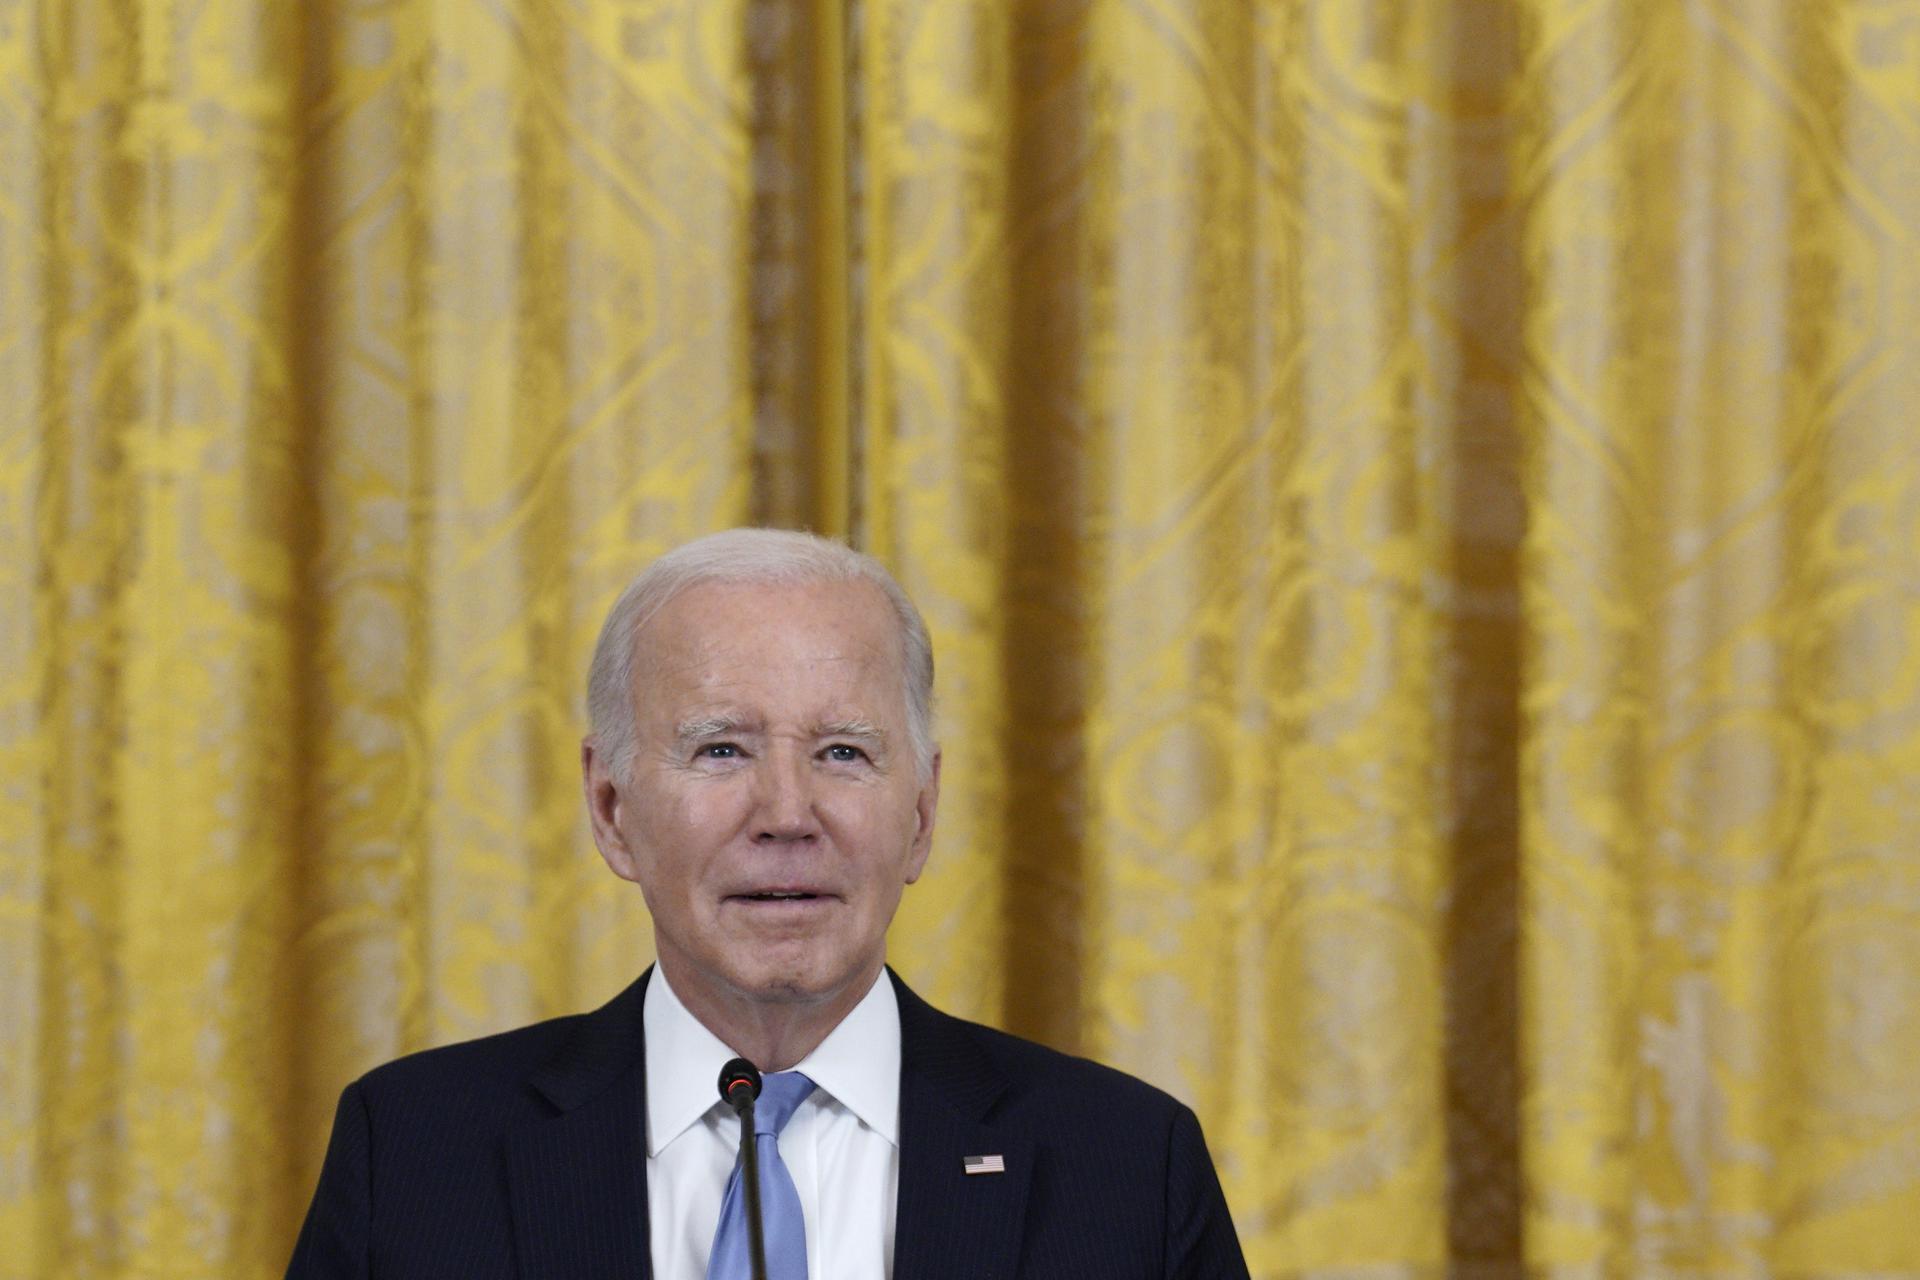 El Presidente de los Estados Unidos, Joe Biden, en una imagen de archivo. EFE/EPA/Yuri Gripas / Pool